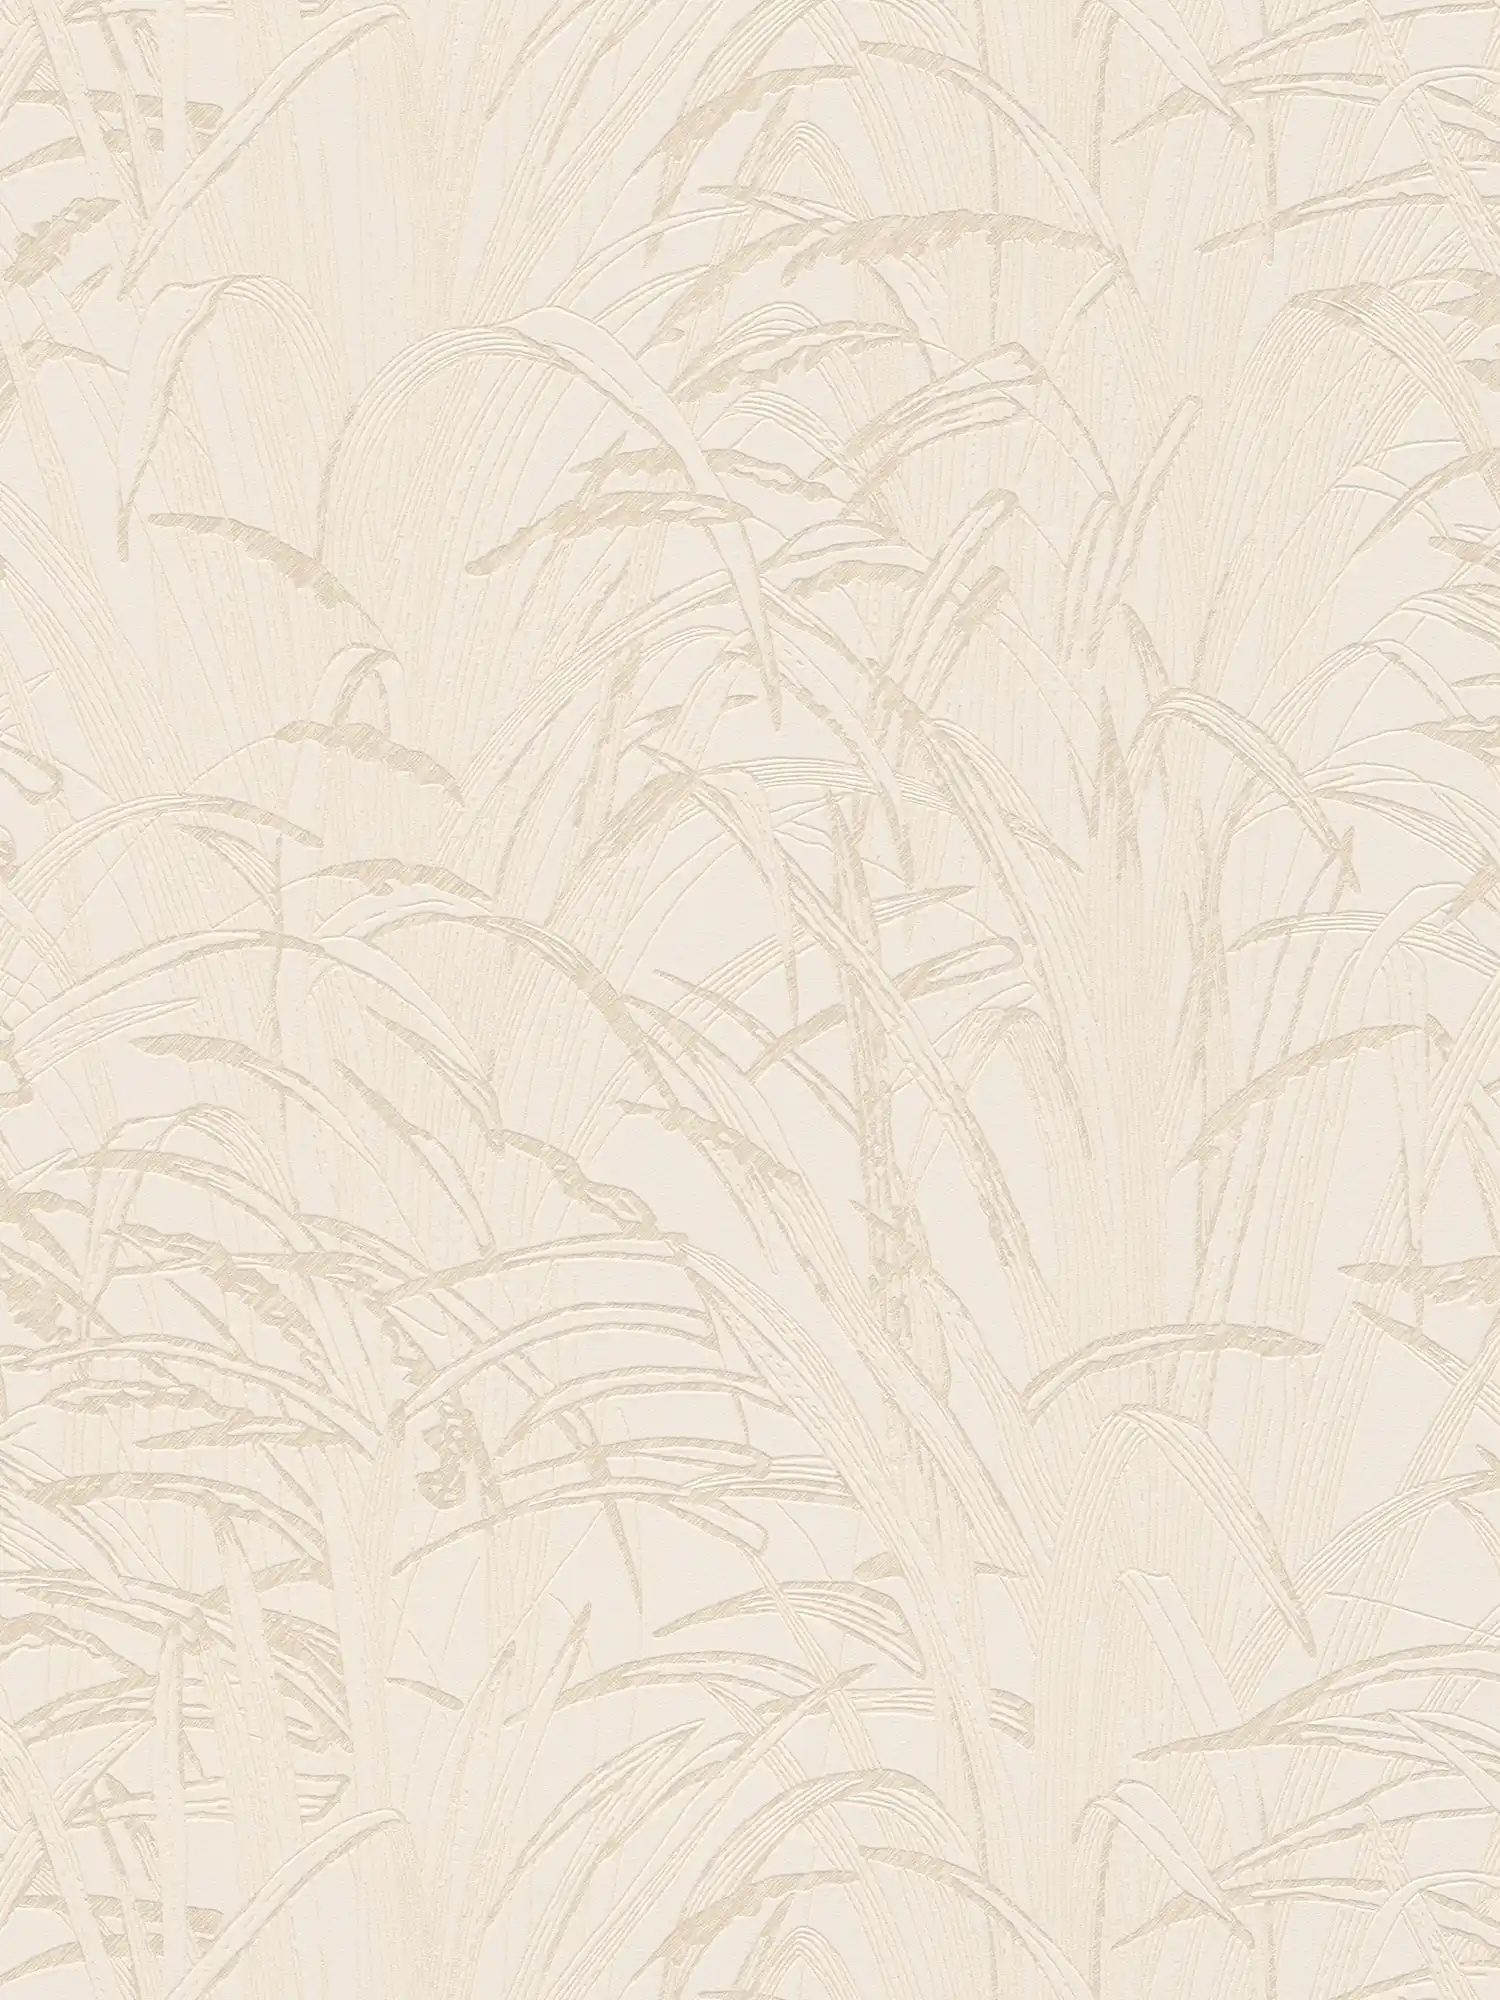 Natuurbehang rietbladeren met metallic kleur - beige, crème
